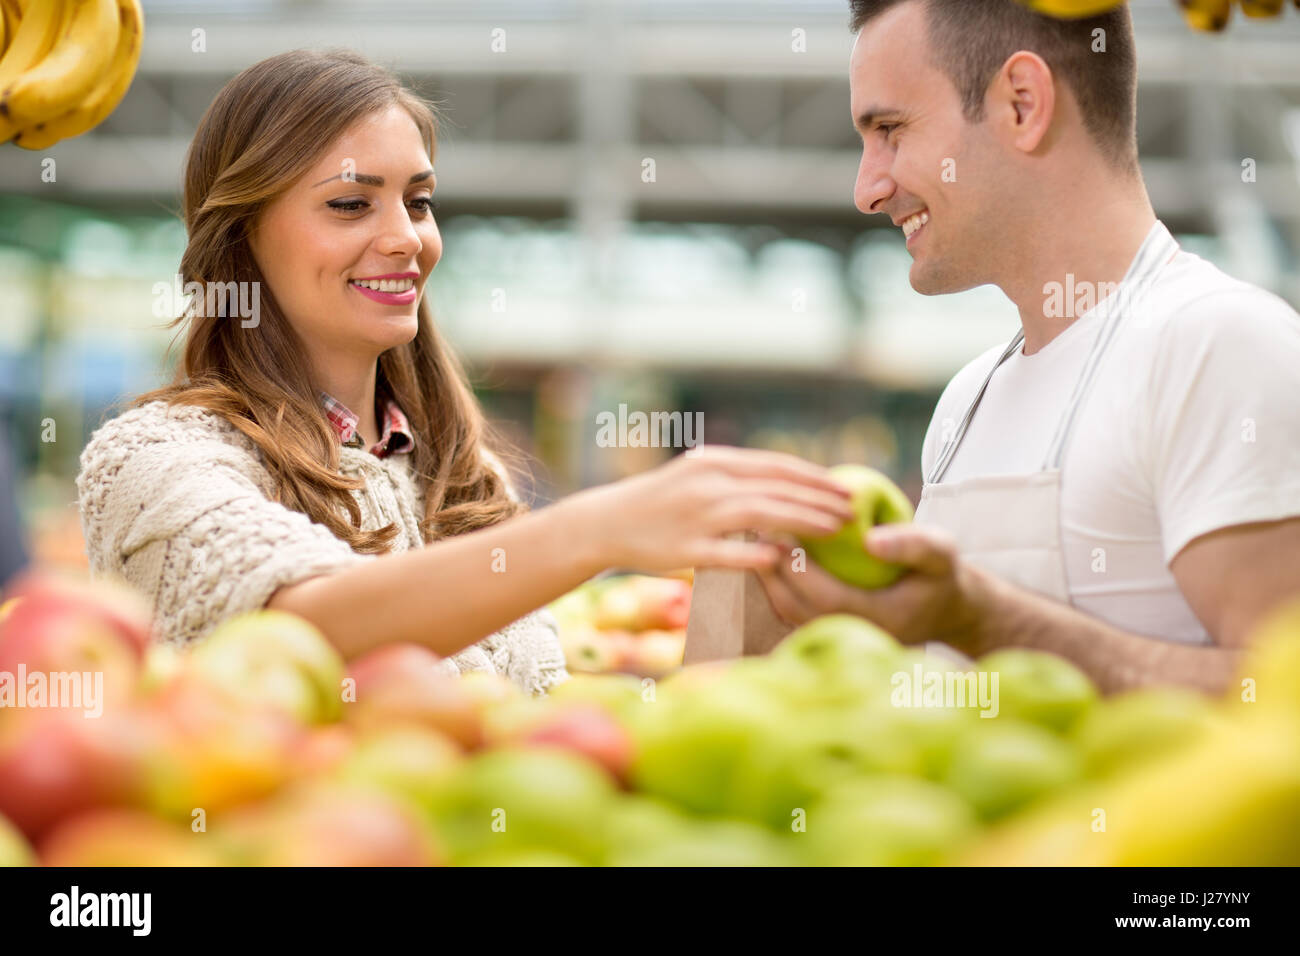 Sonrisa y vendedor con Apple Foto de stock